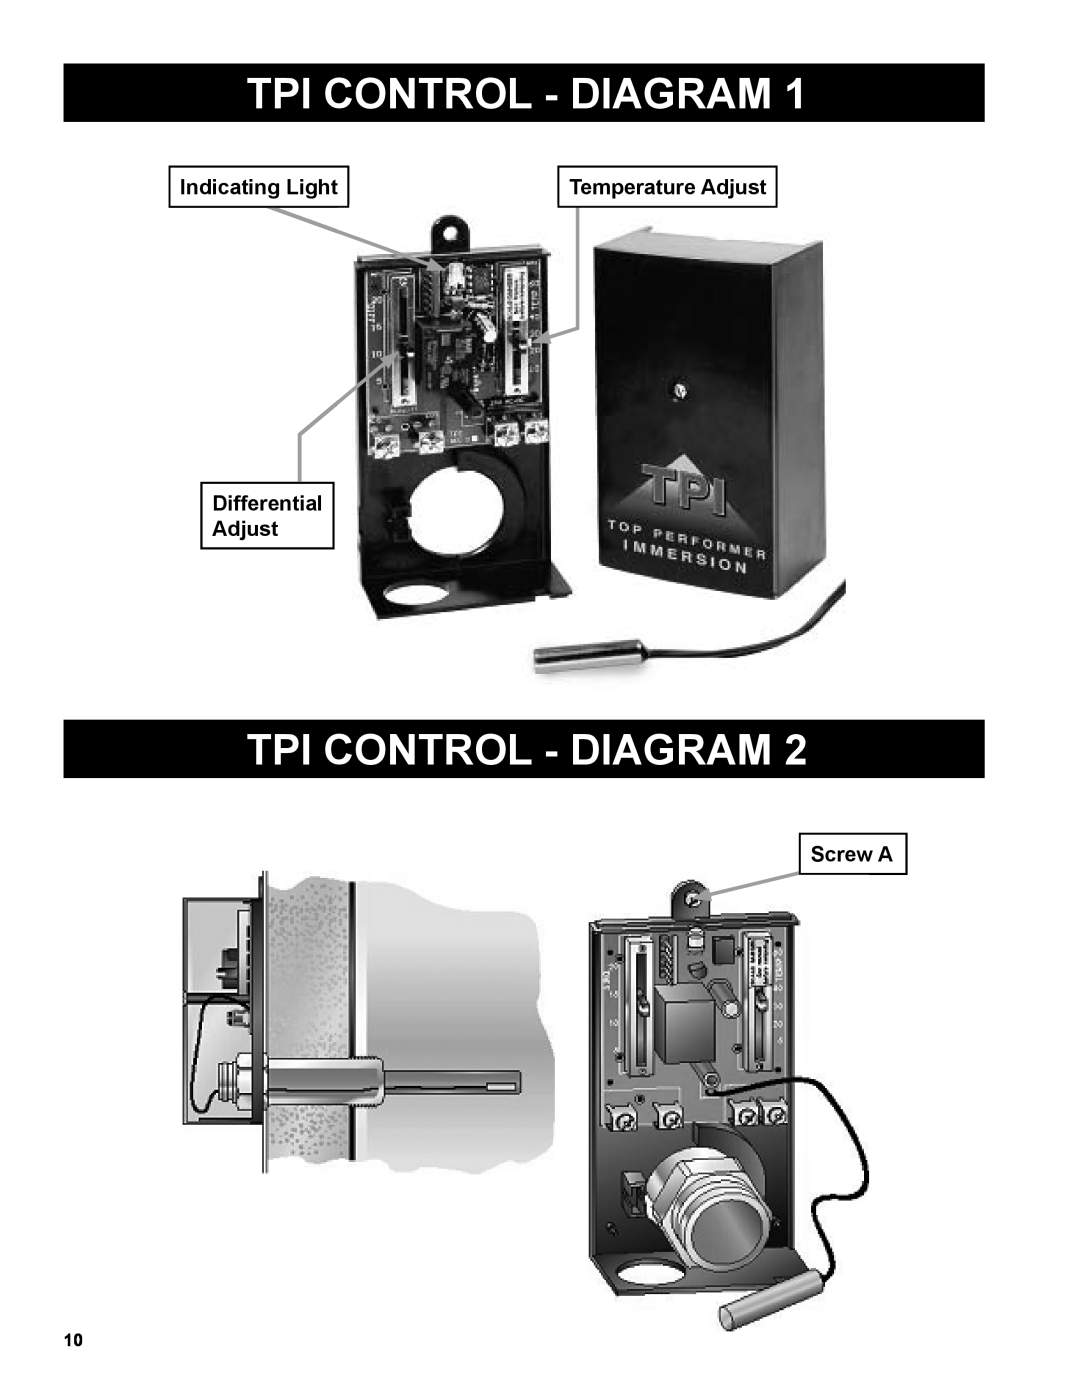 Burnham AL SL warranty Tpi Control - Diagram, Indicating Light, Temperature Adjust, Differential Adjust, Screw A 